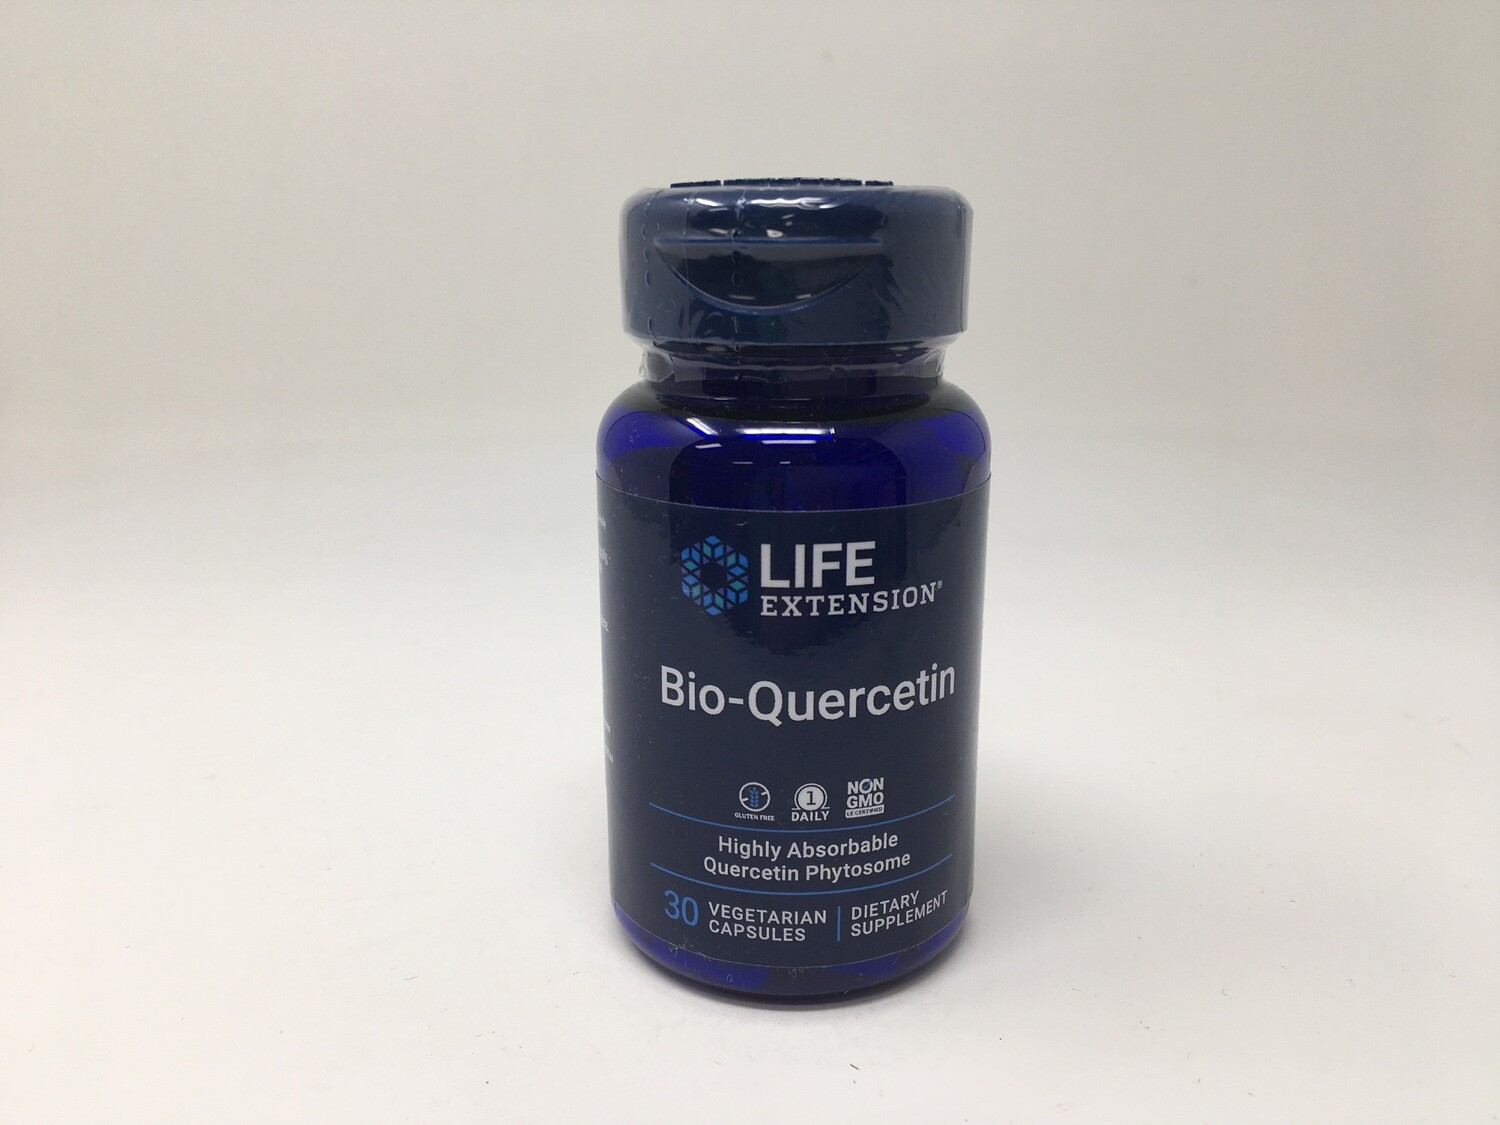 Bio-Quercetin 30 capsules (Life Extension)